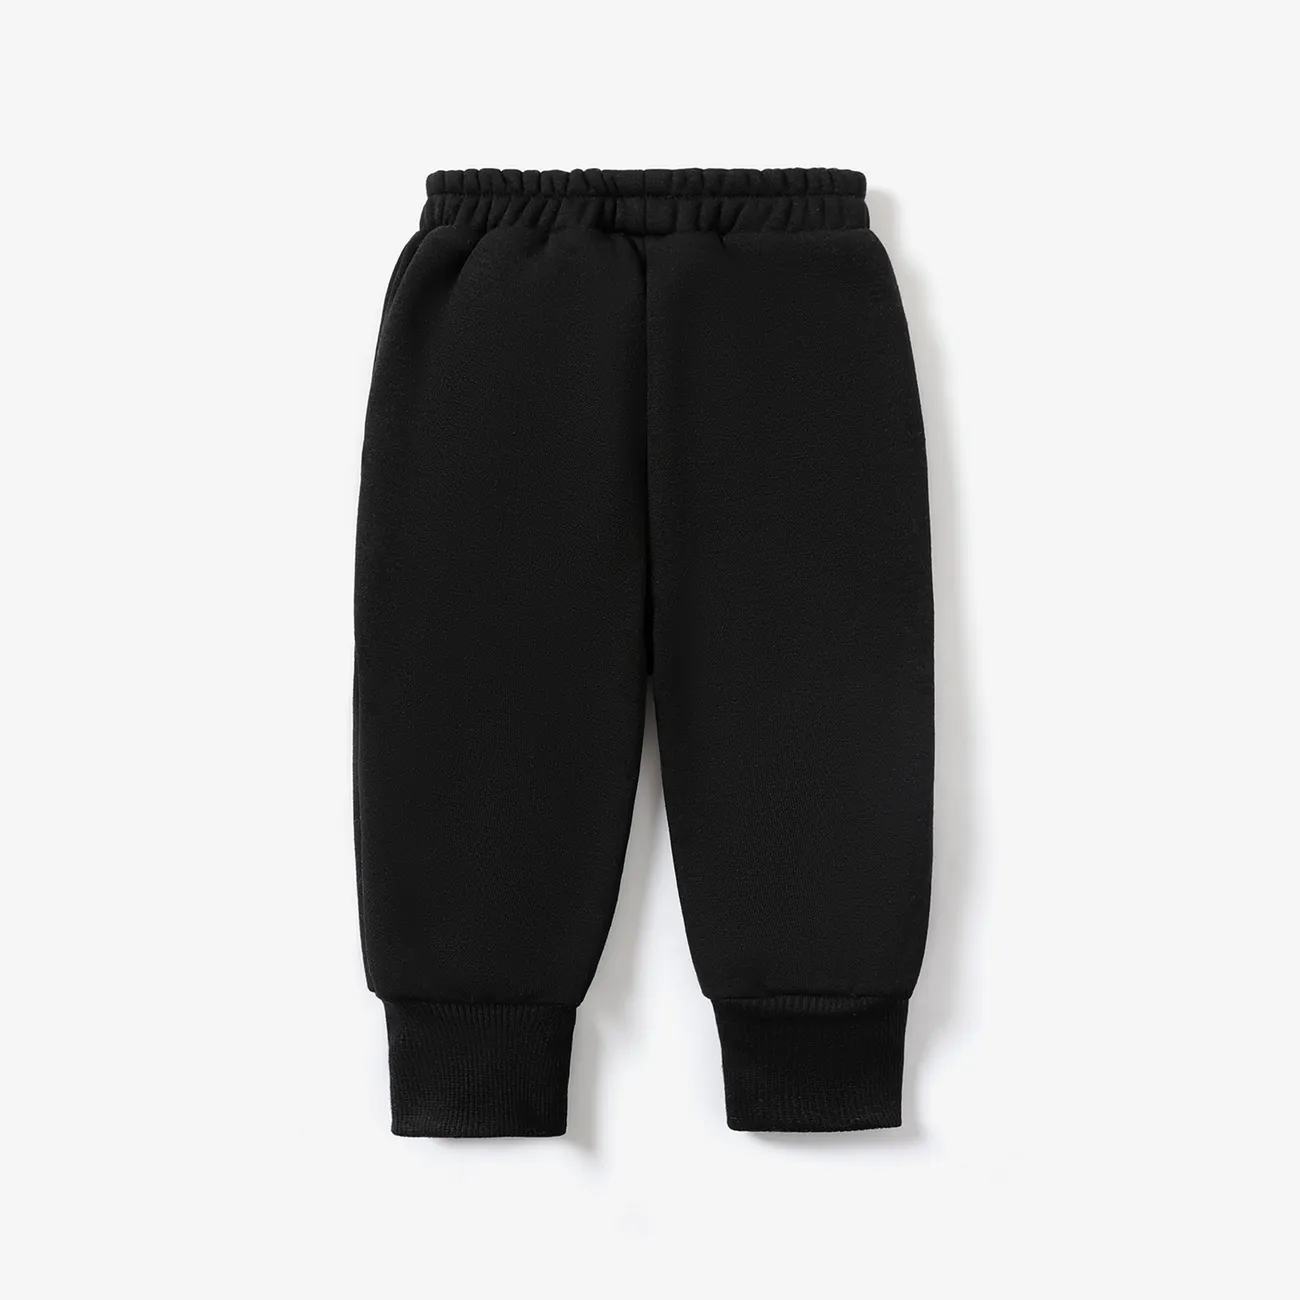 Baby Boy/Girl Solid Fleece-lining Casual Pants Black big image 1